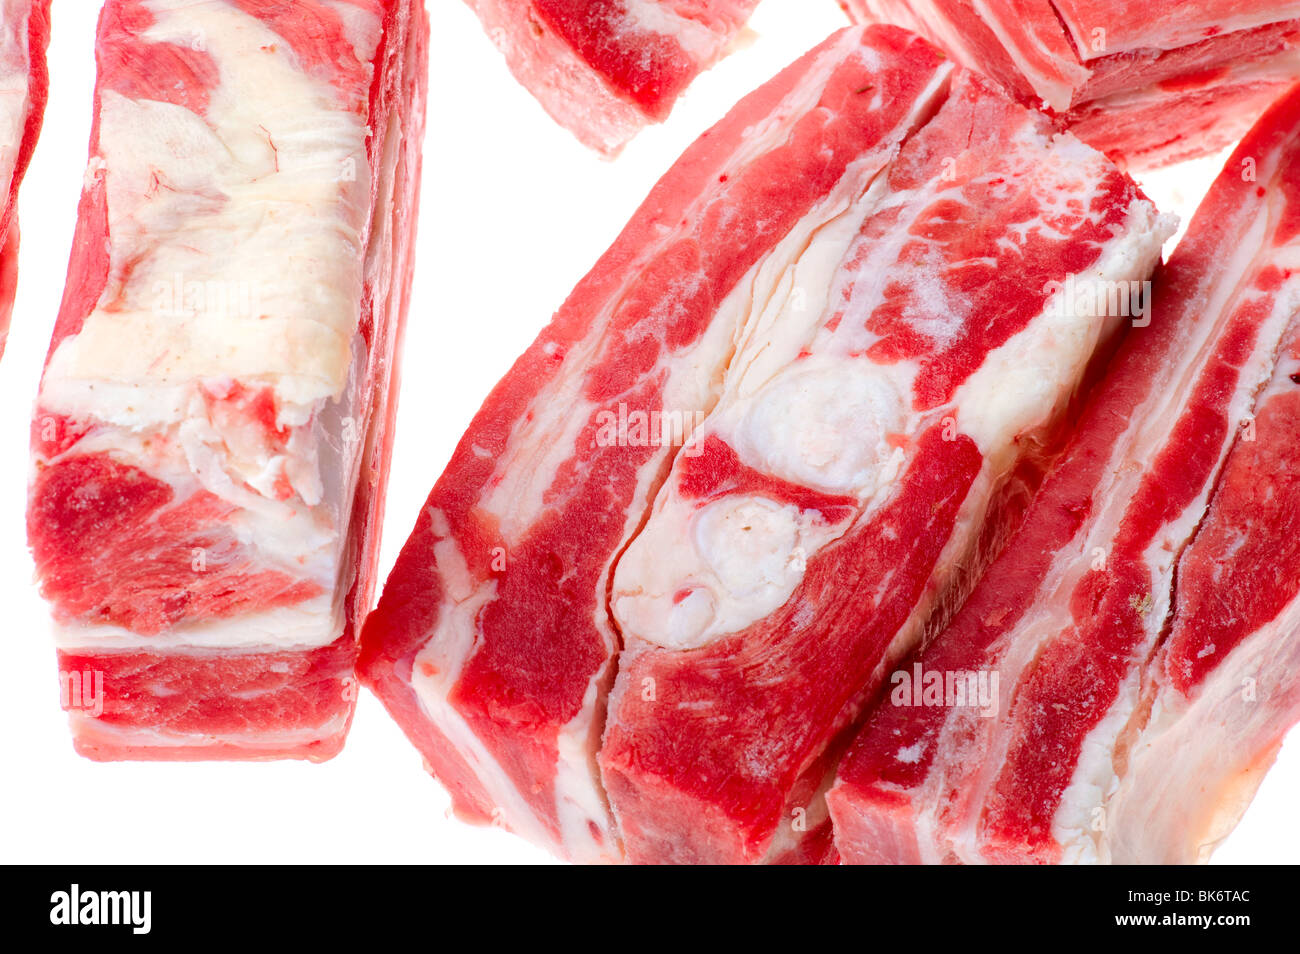 Objekt auf weiß - rohes Fleisch essen Stockfoto